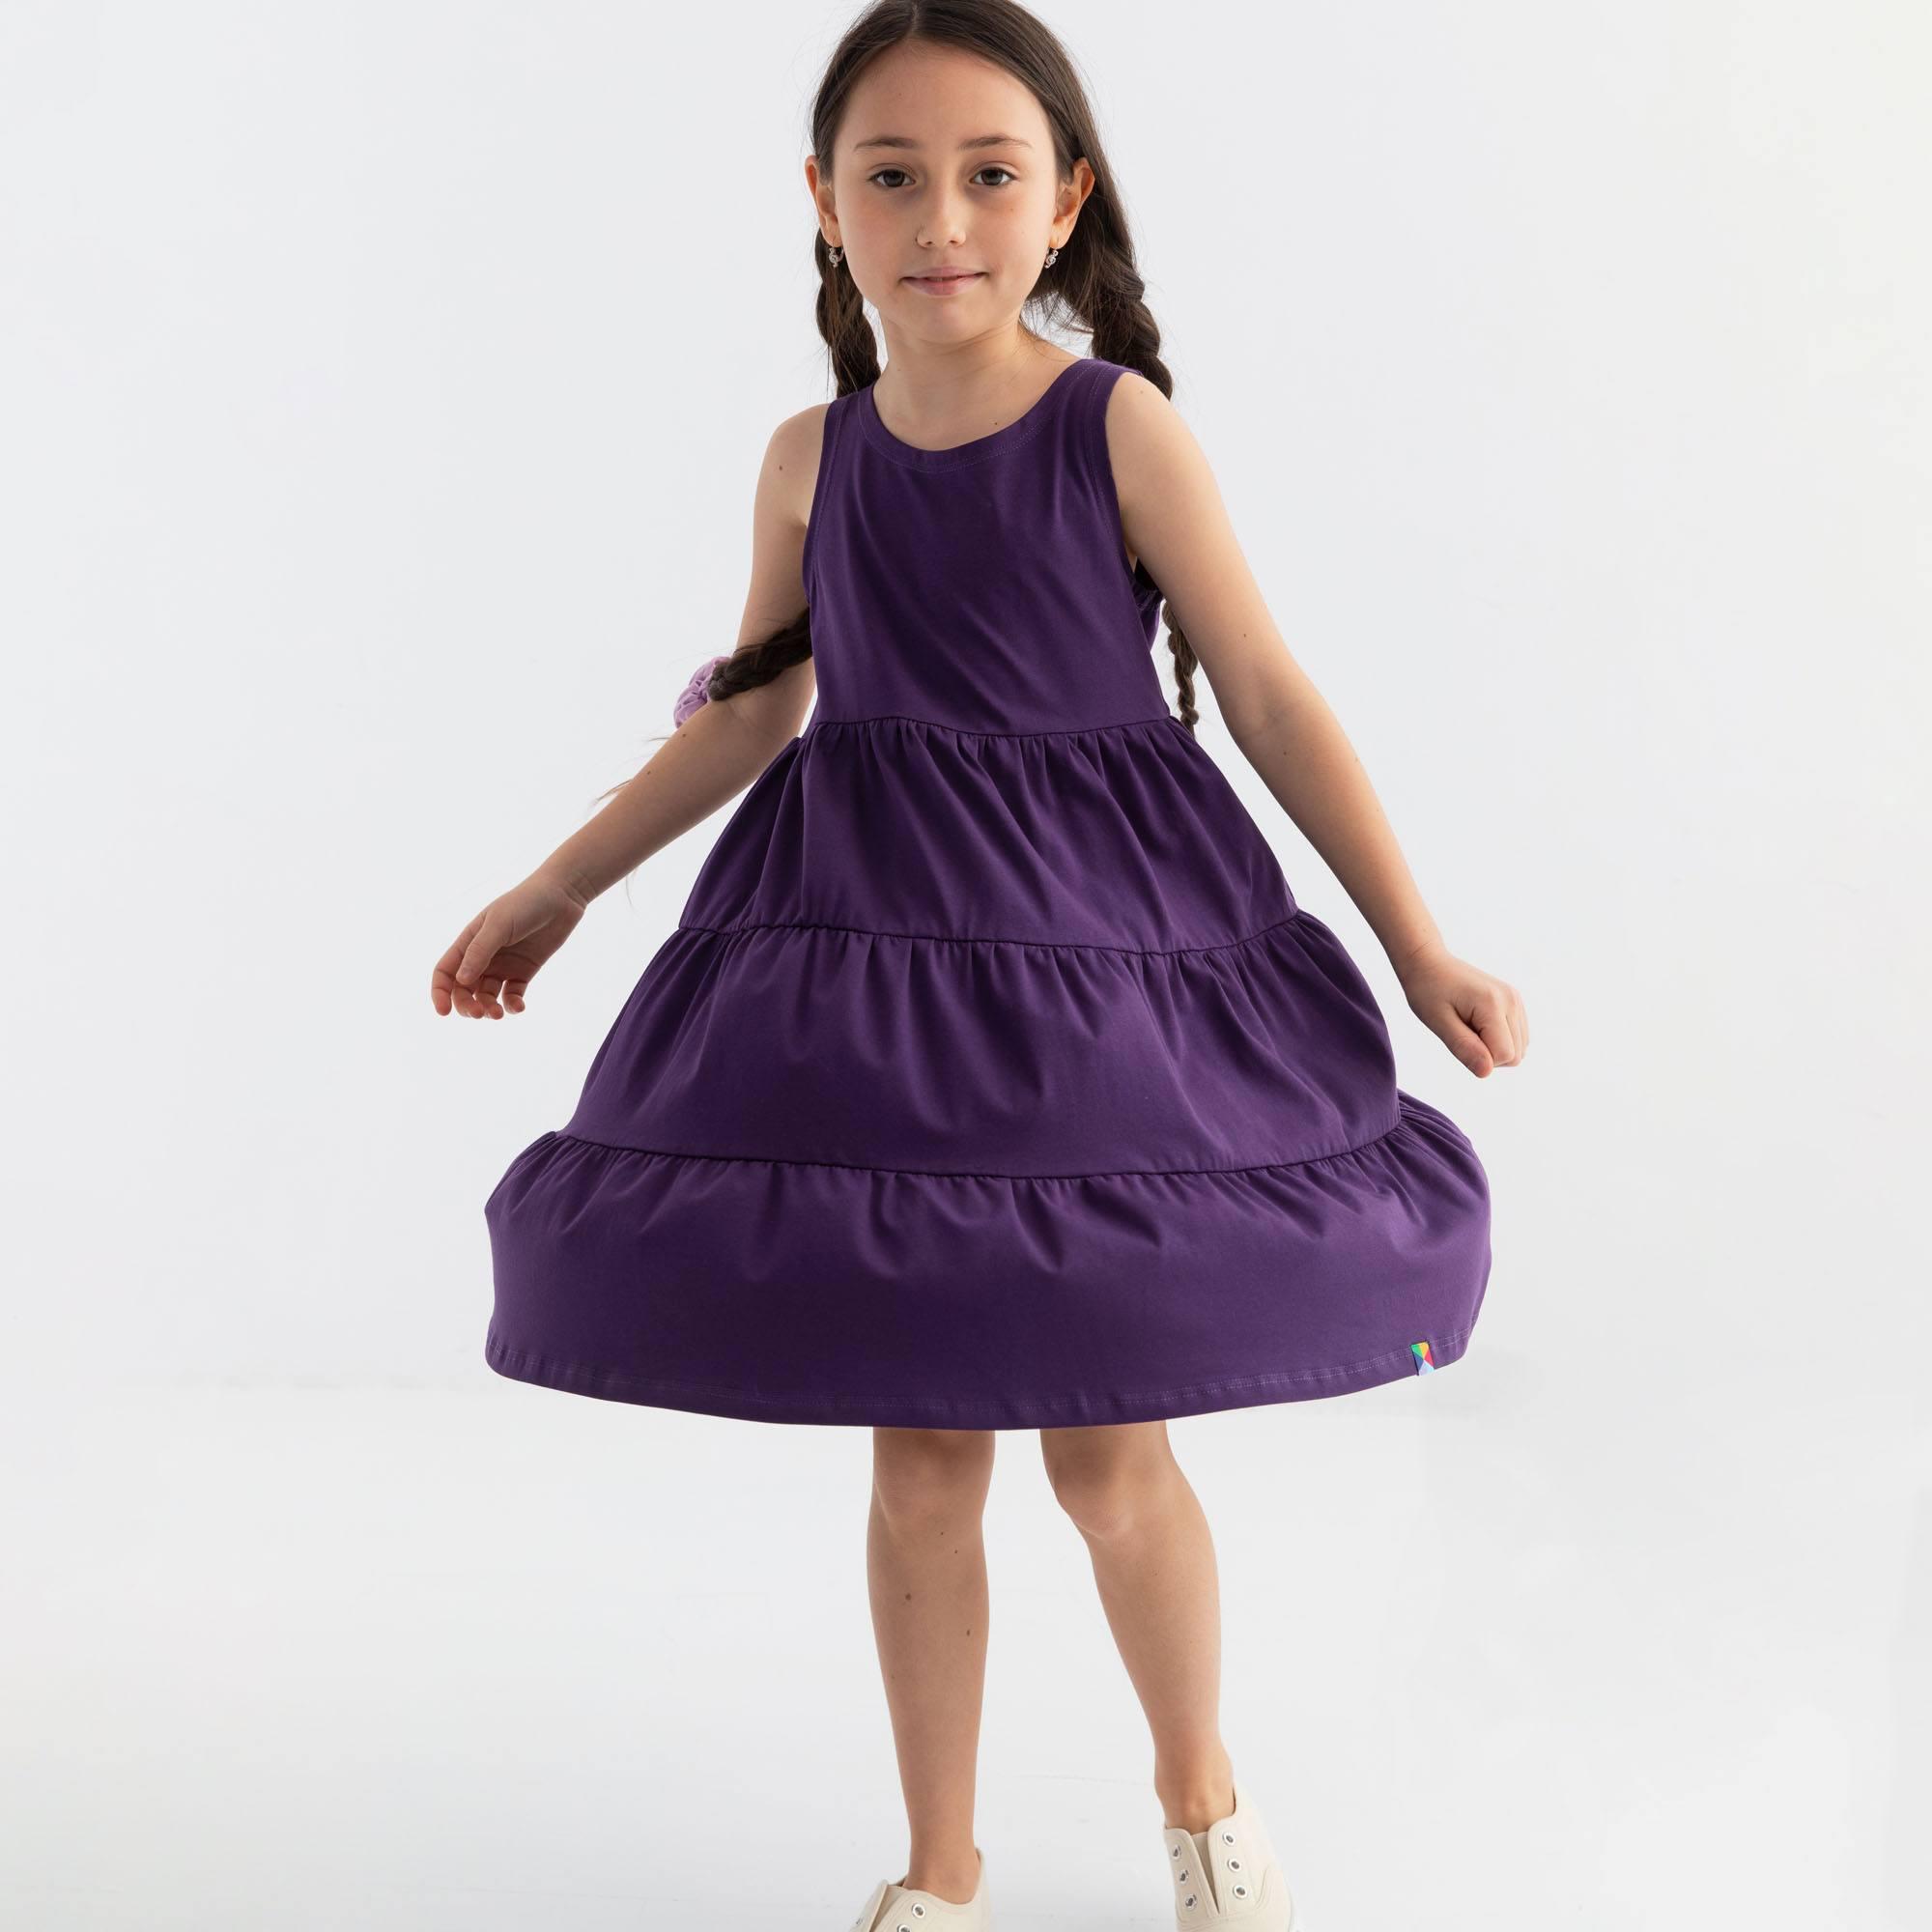 Fioletowa sukienka bez rękawów